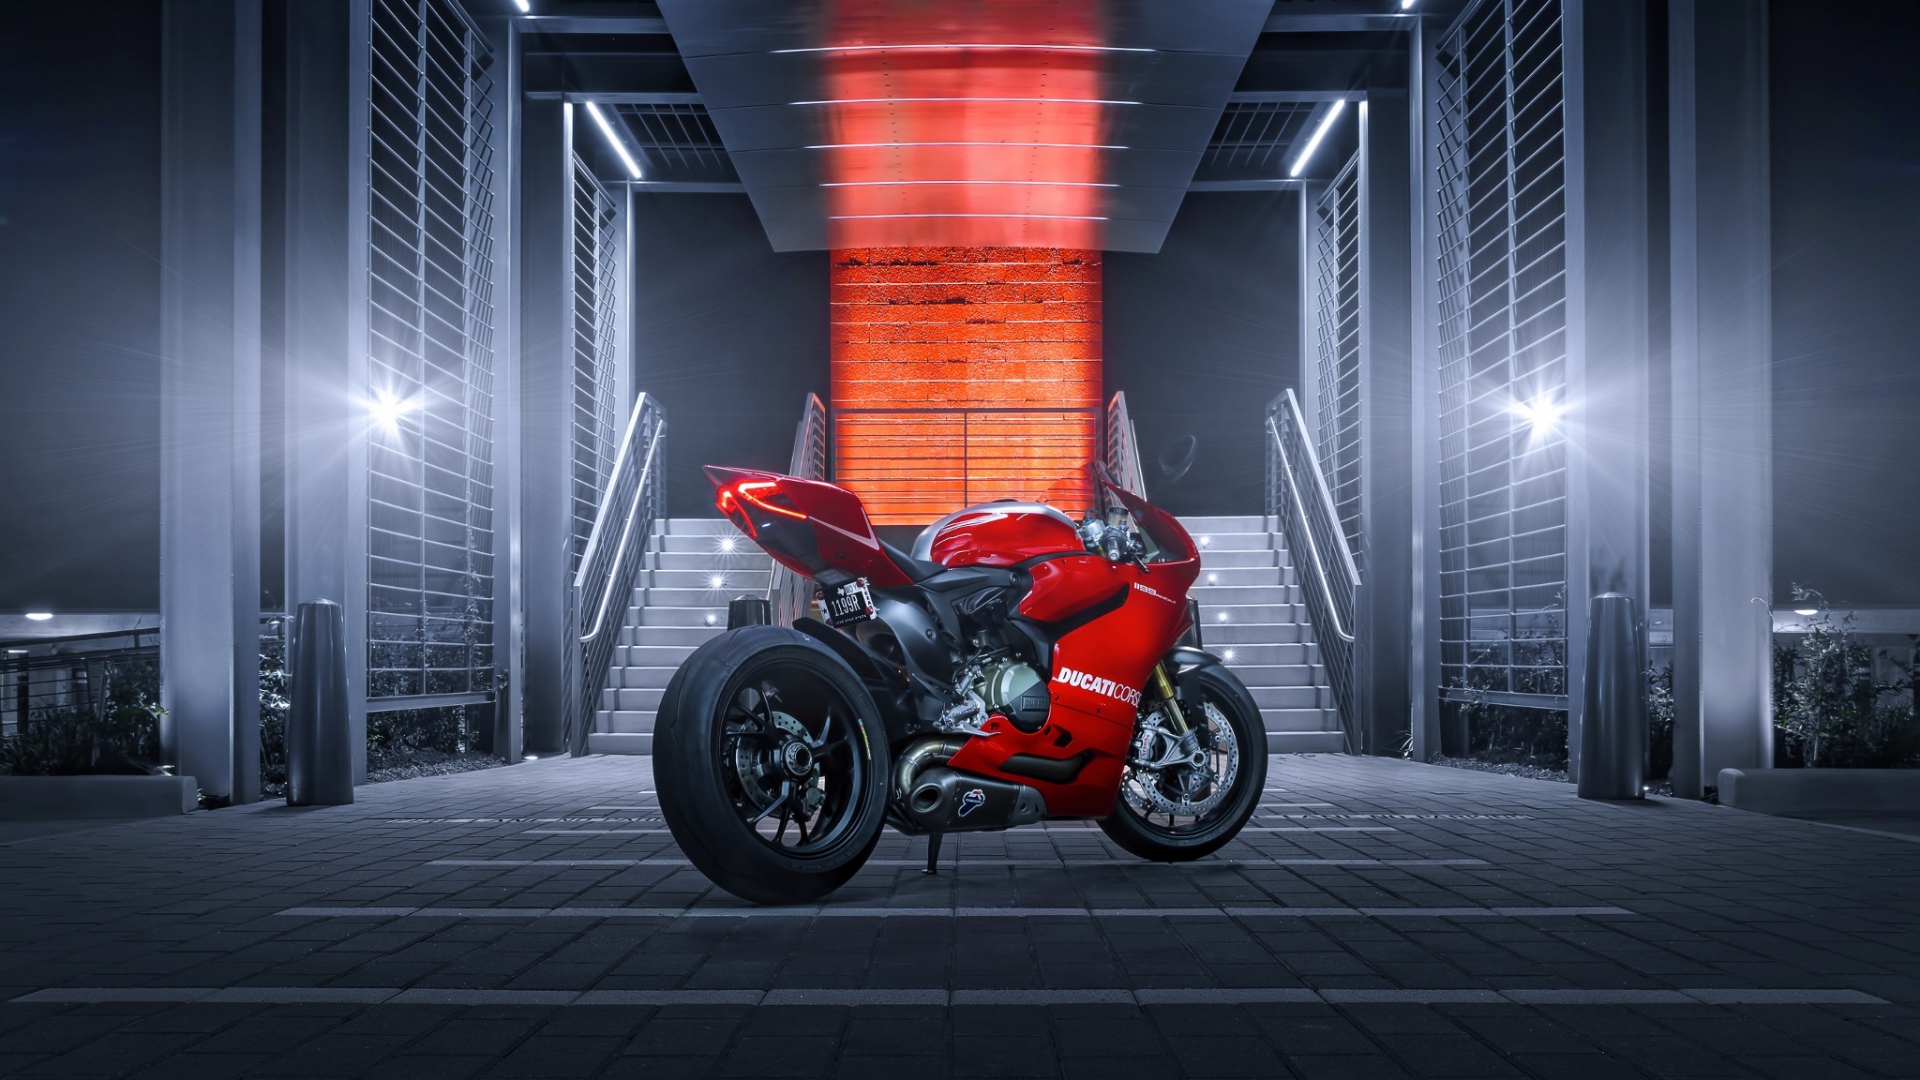 Ducati Bike Desktop HD Wallpaper 60234 1920x1080 px